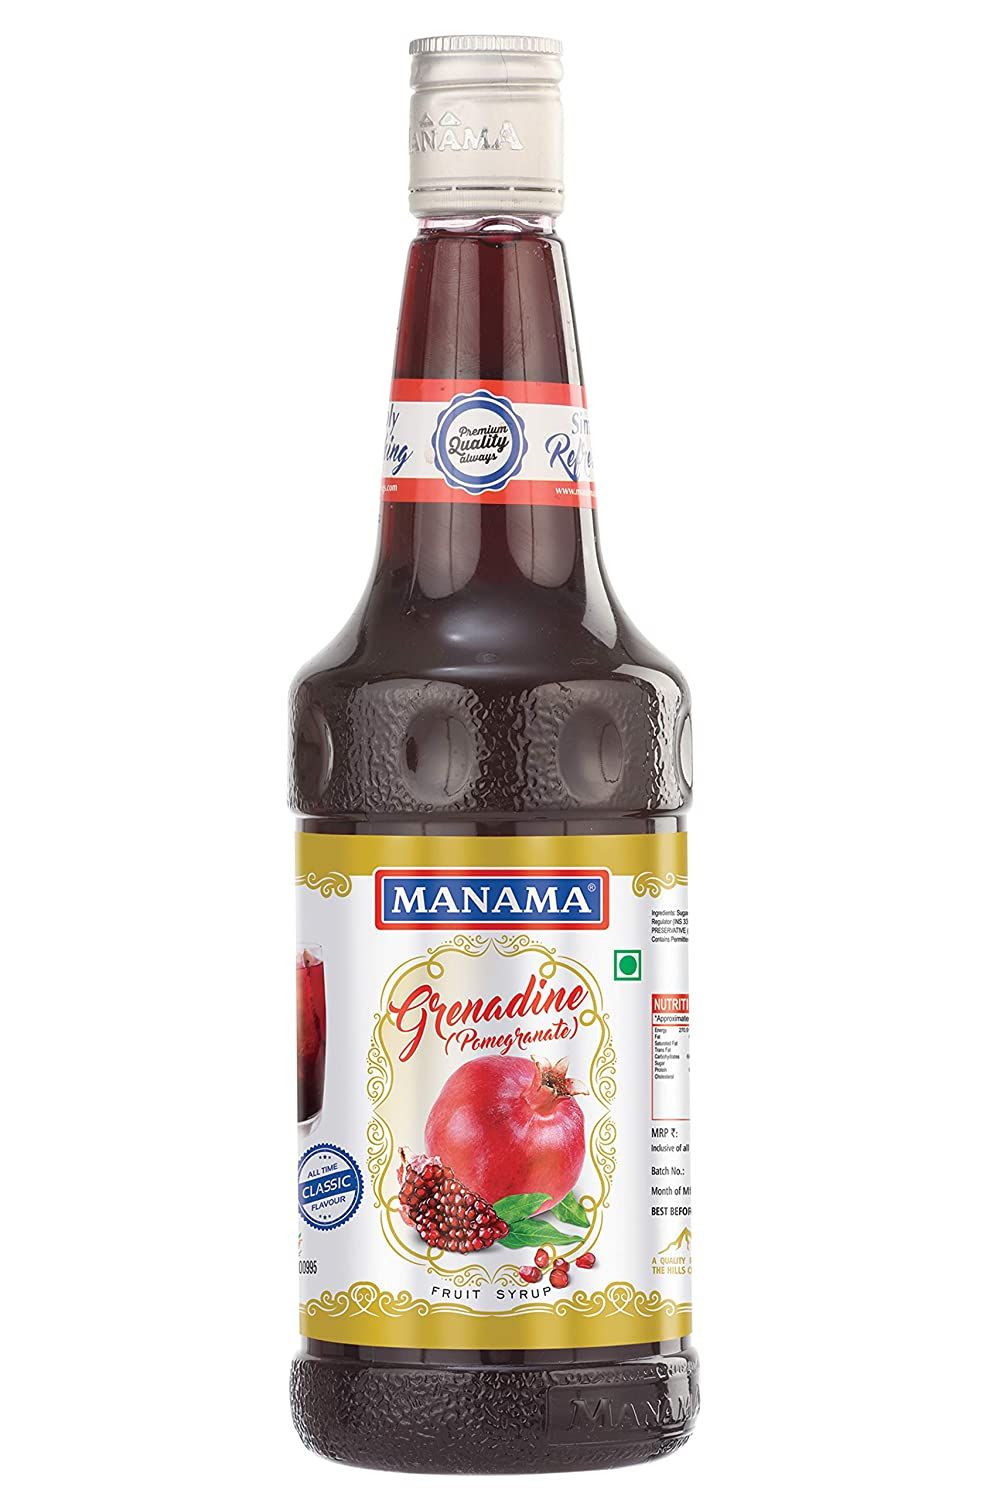 Manama Grenadine Fruit Flavoured Syrup Image